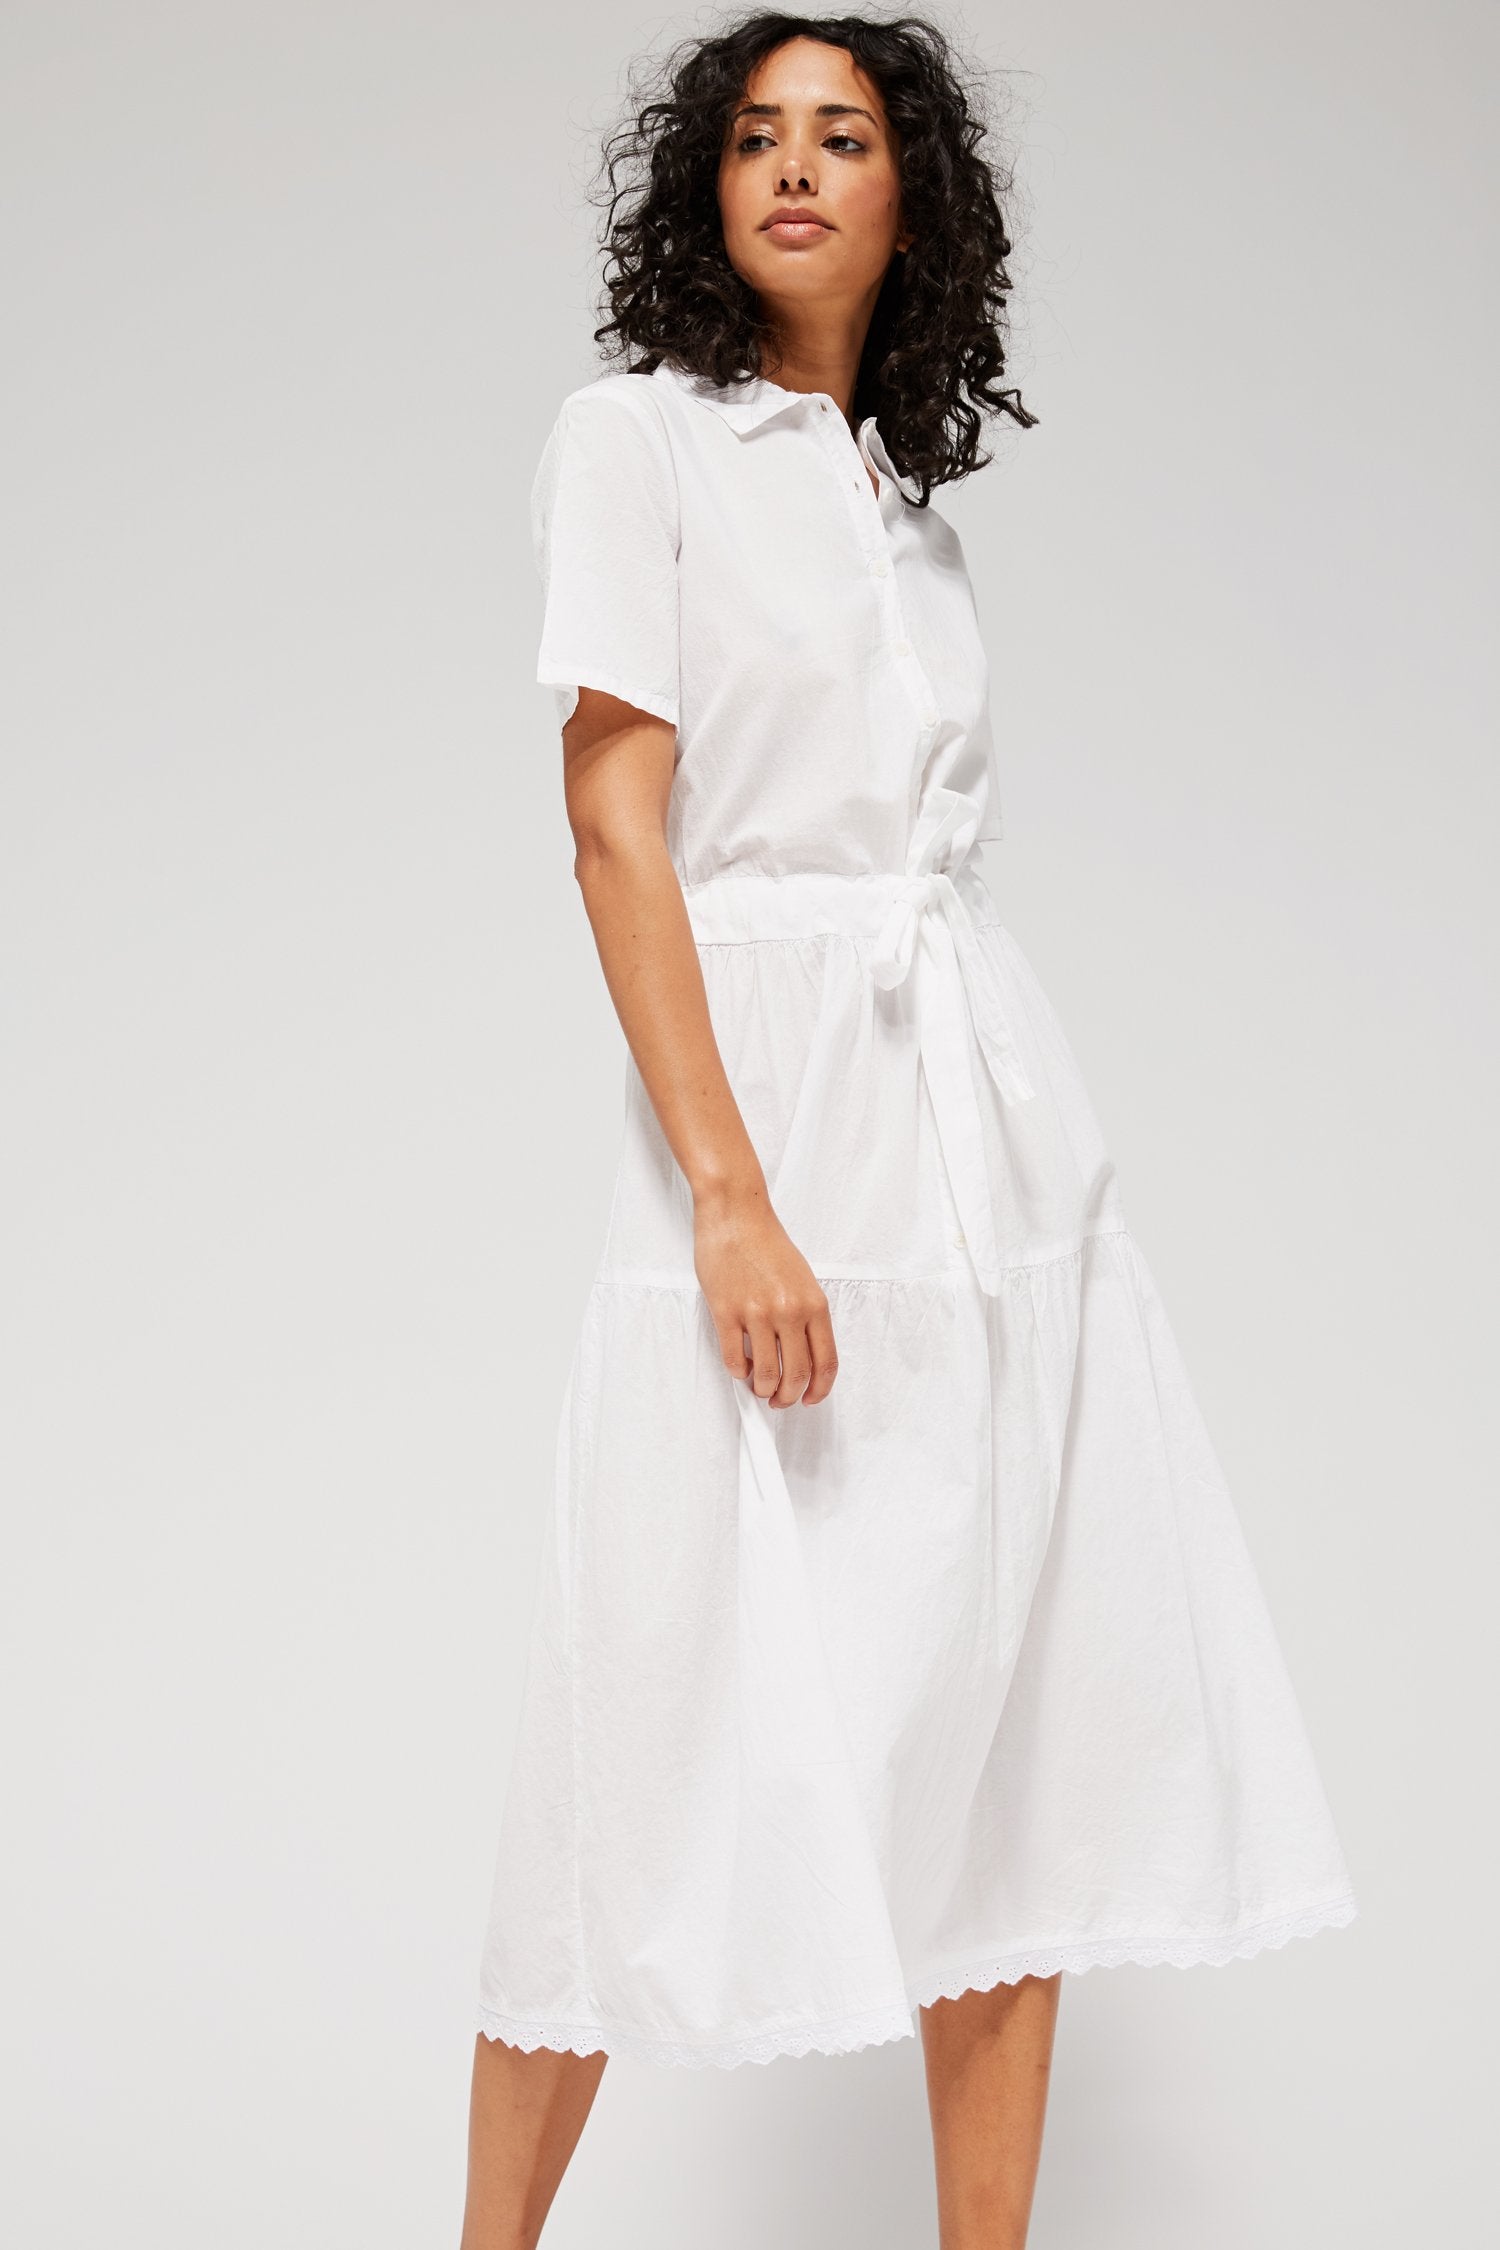 Buy > white shirt long dress > in stock